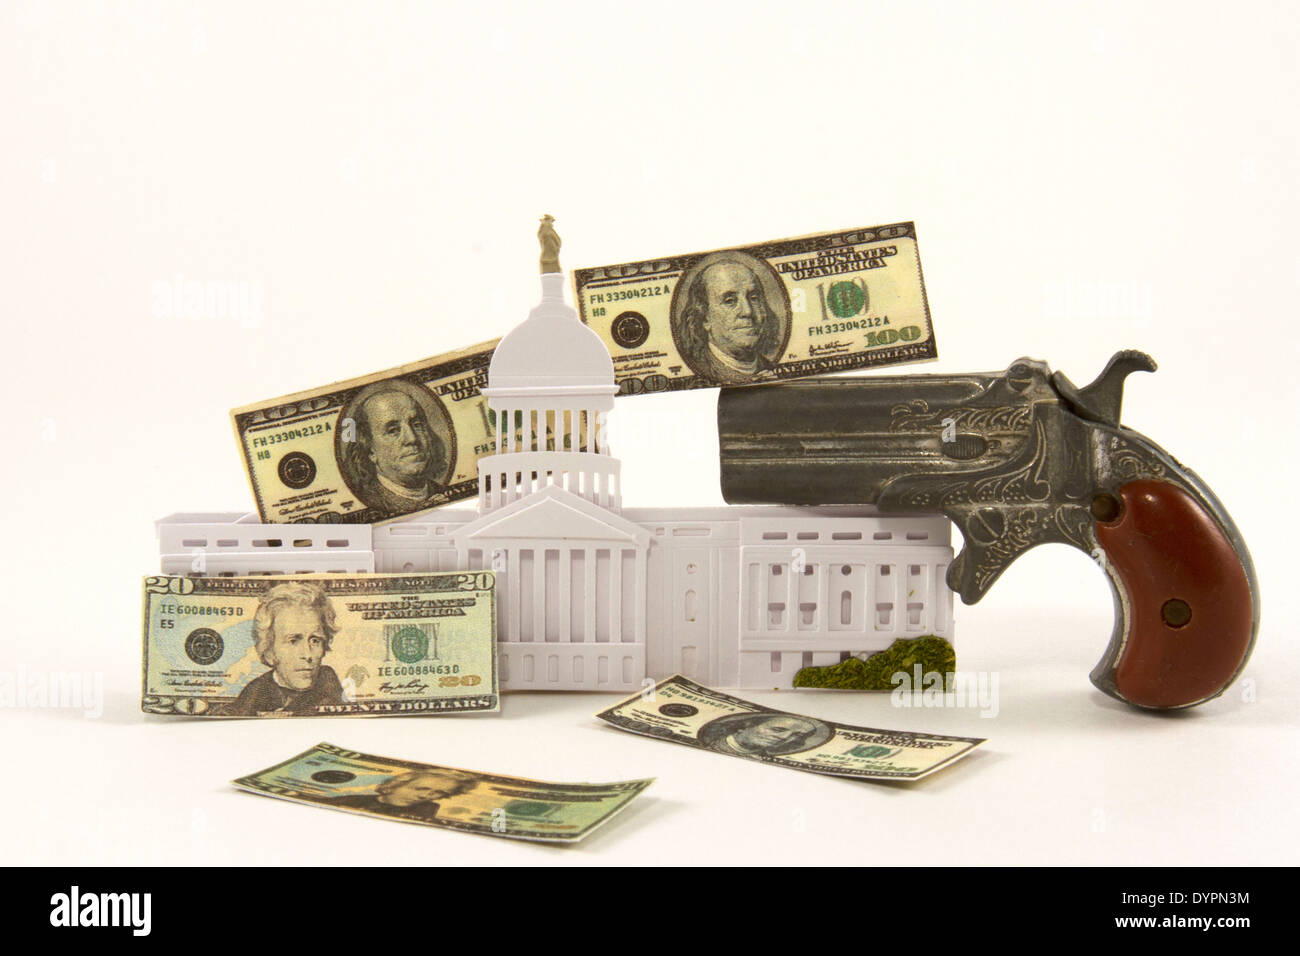 US-Kongress-Gebäude mit Handfeuerwaffe und amerikanischen Währung Stockfoto